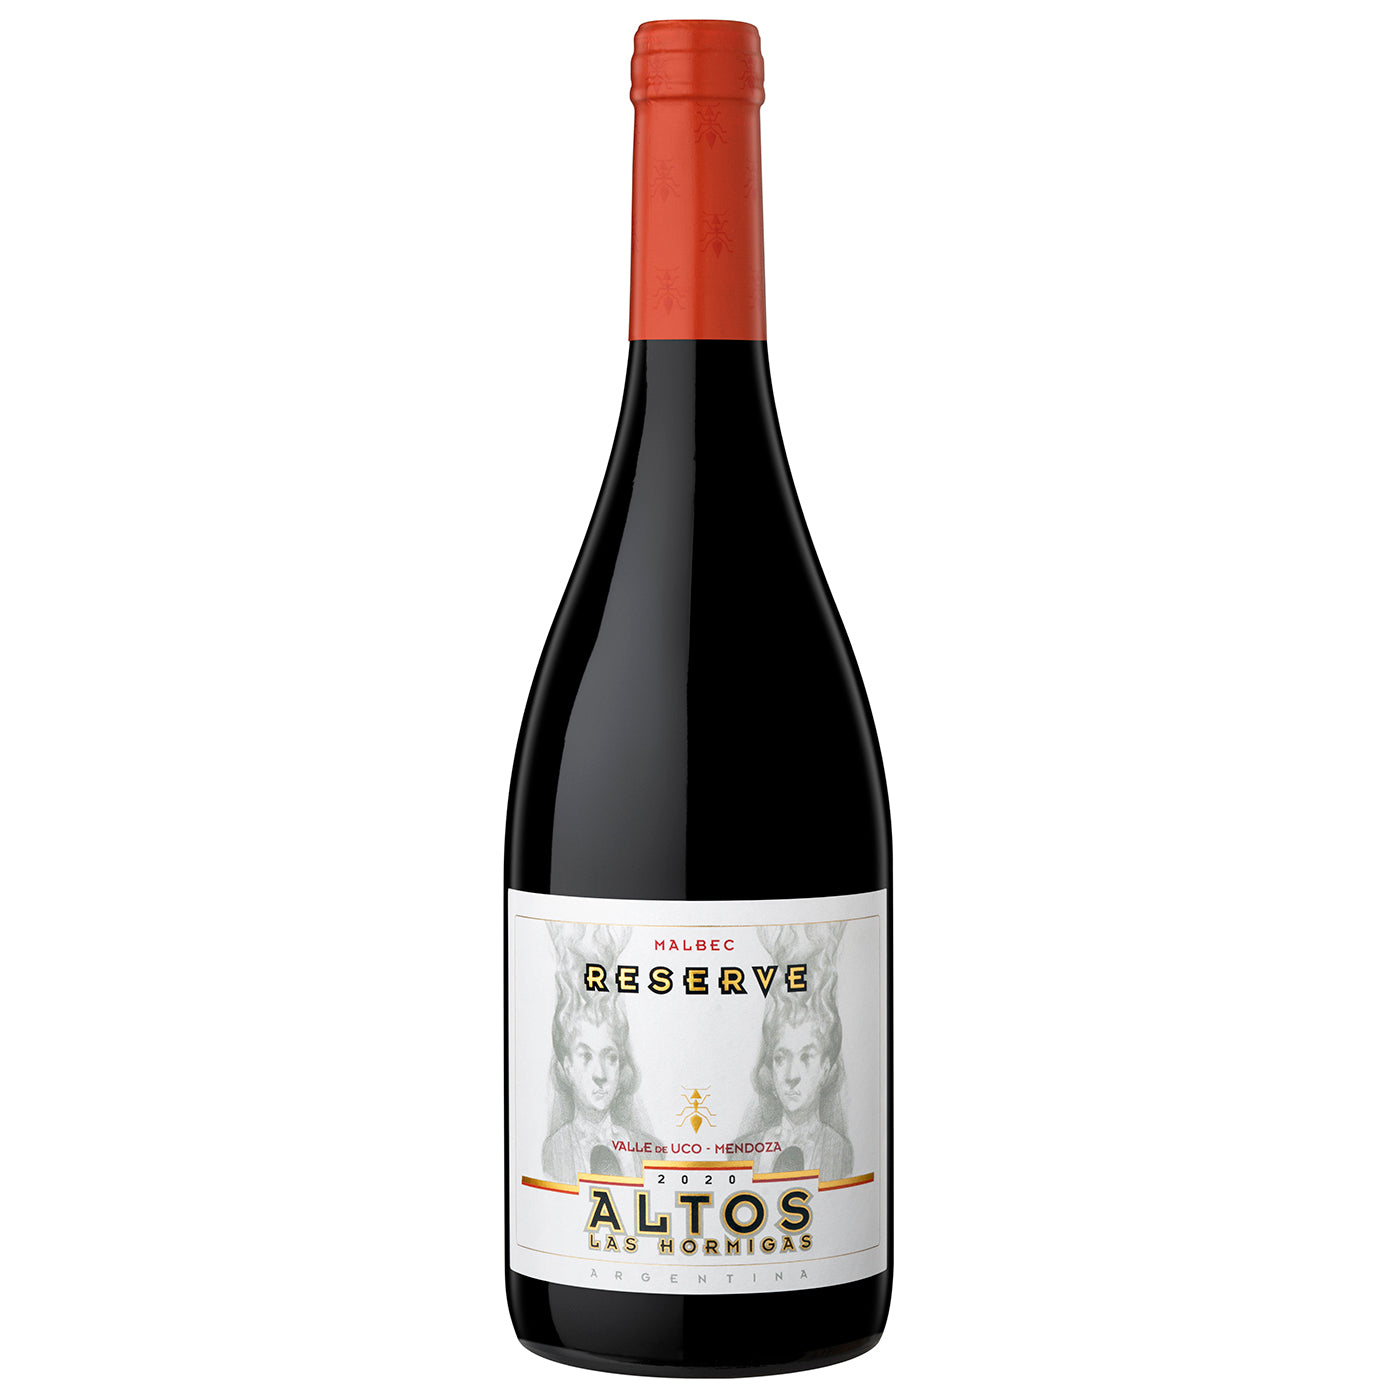 – Altos Las Wines Reserve 2020 Hormigas Malbec Victoria